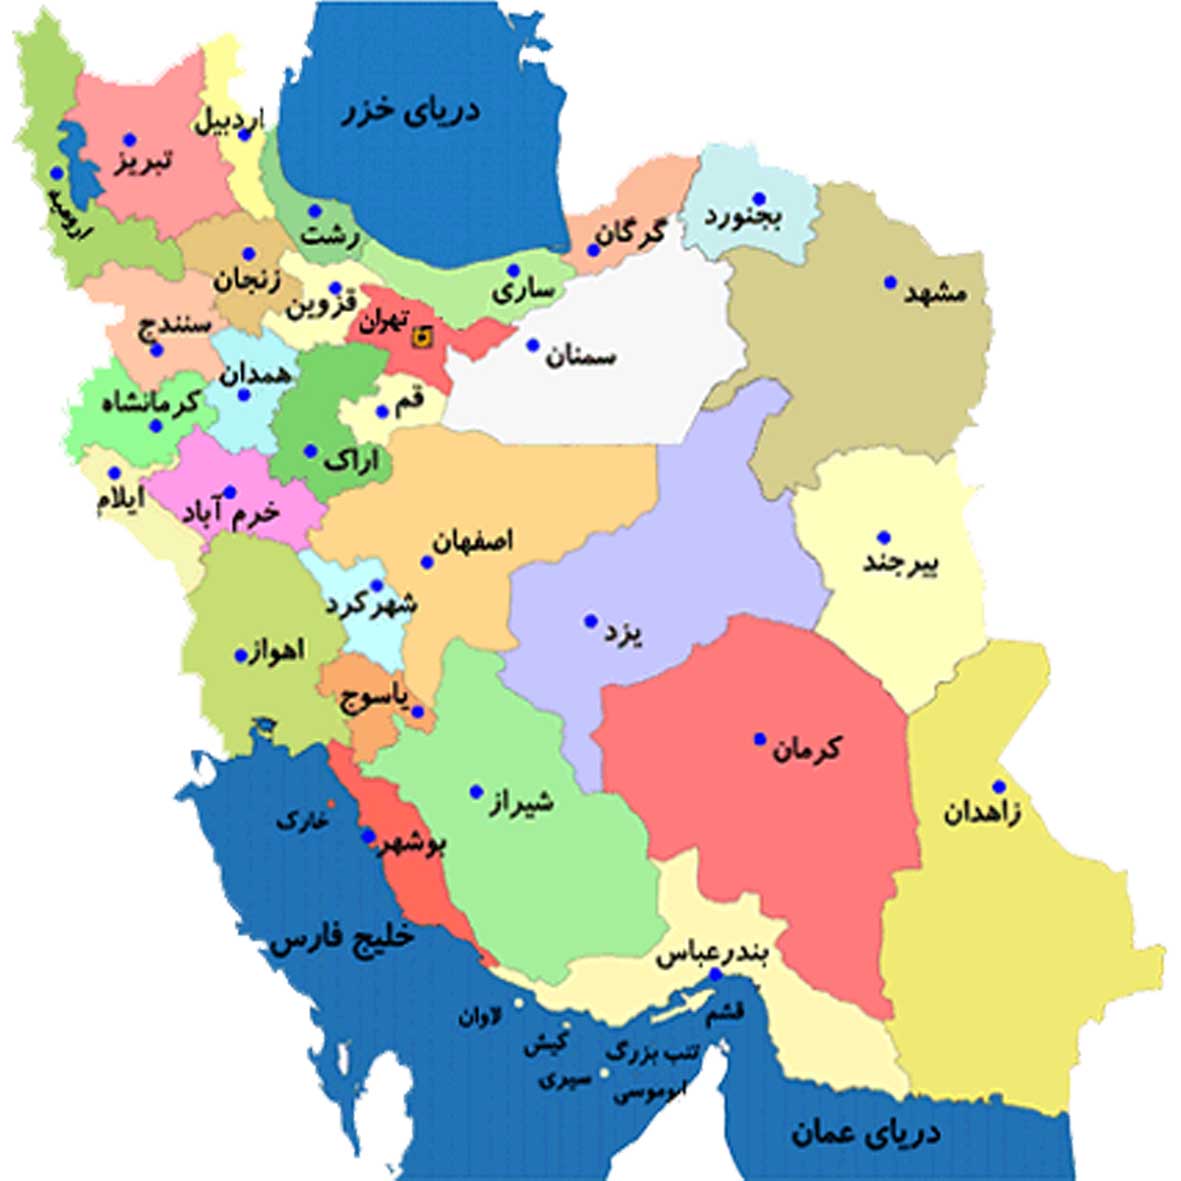 عکس نقشه ی ایران و همسایگانش